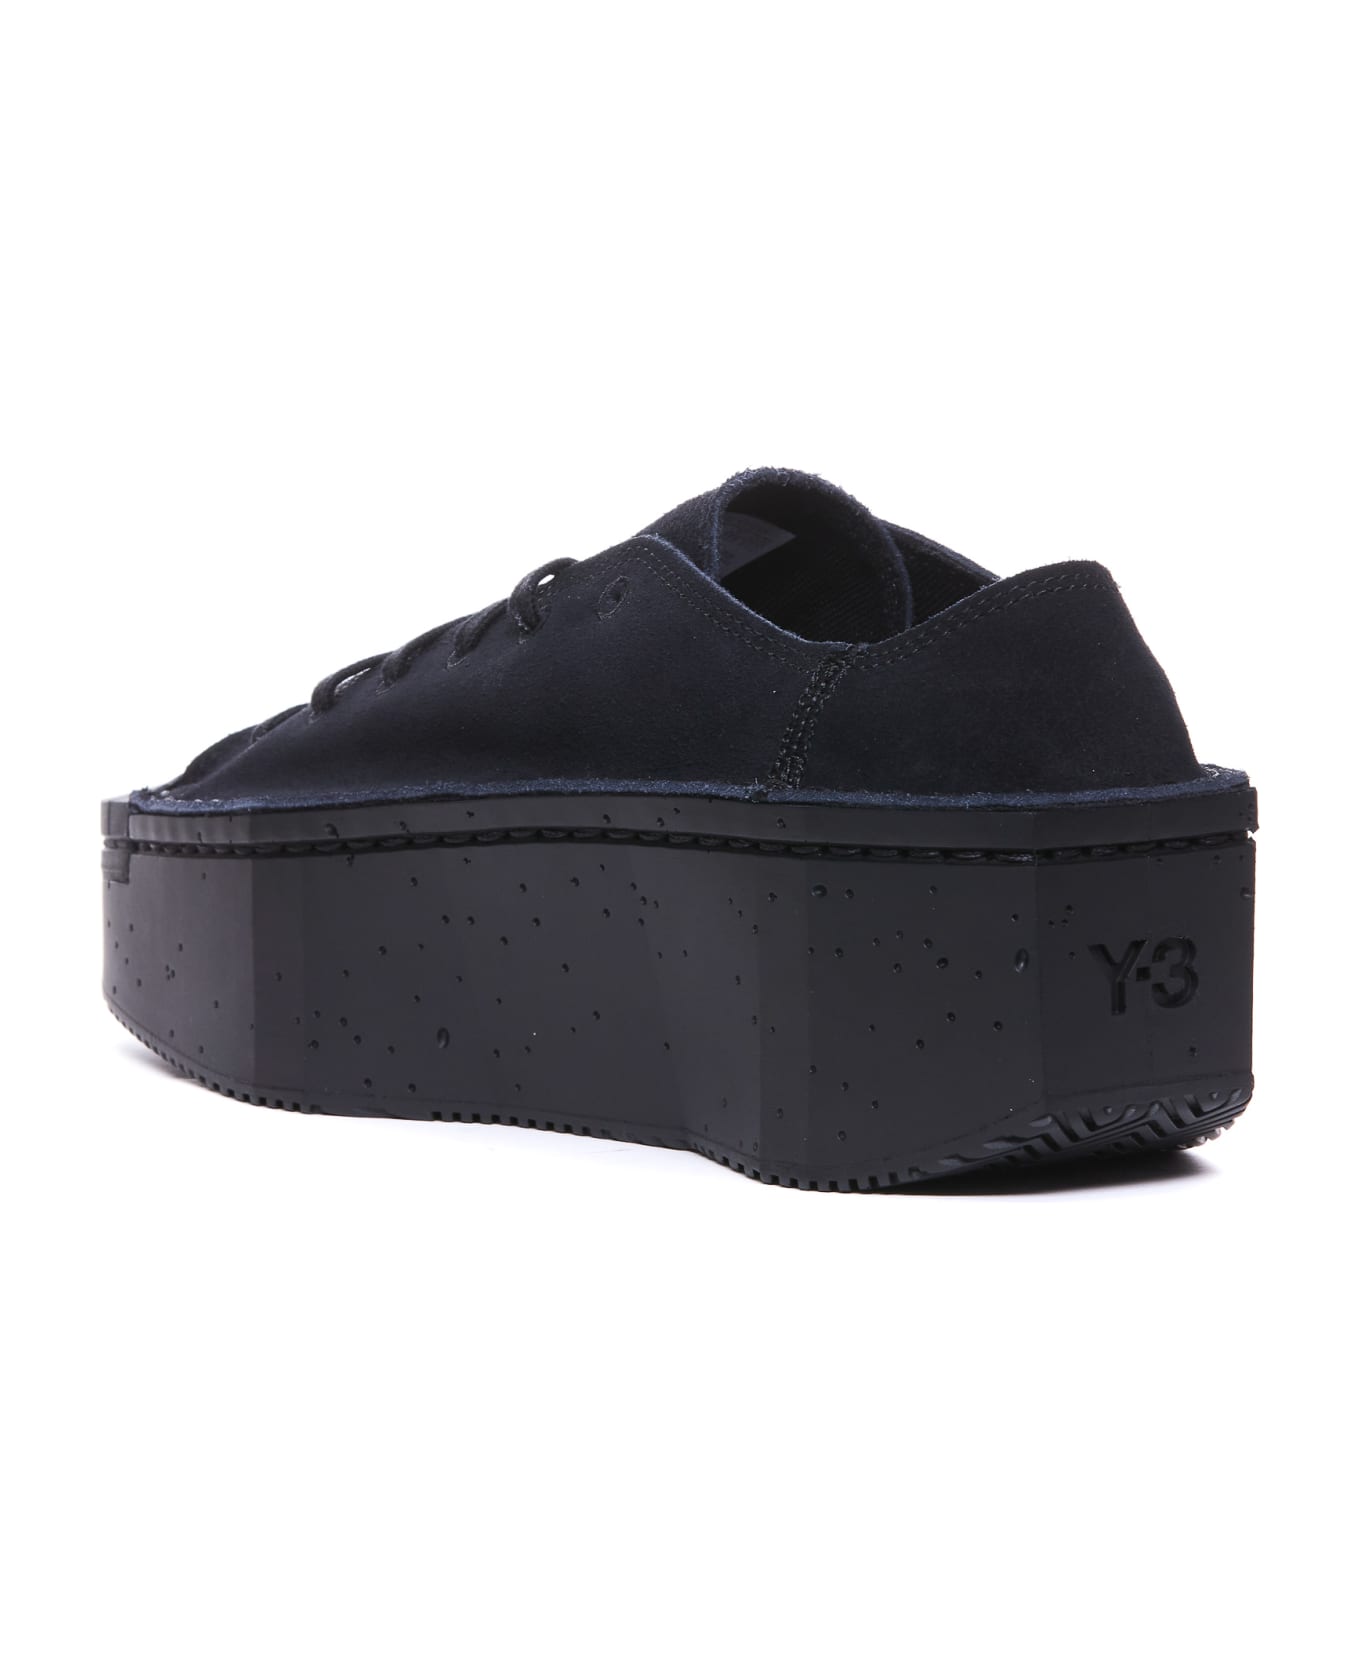 Y-3 Kyasu Lo Sneakers - Black